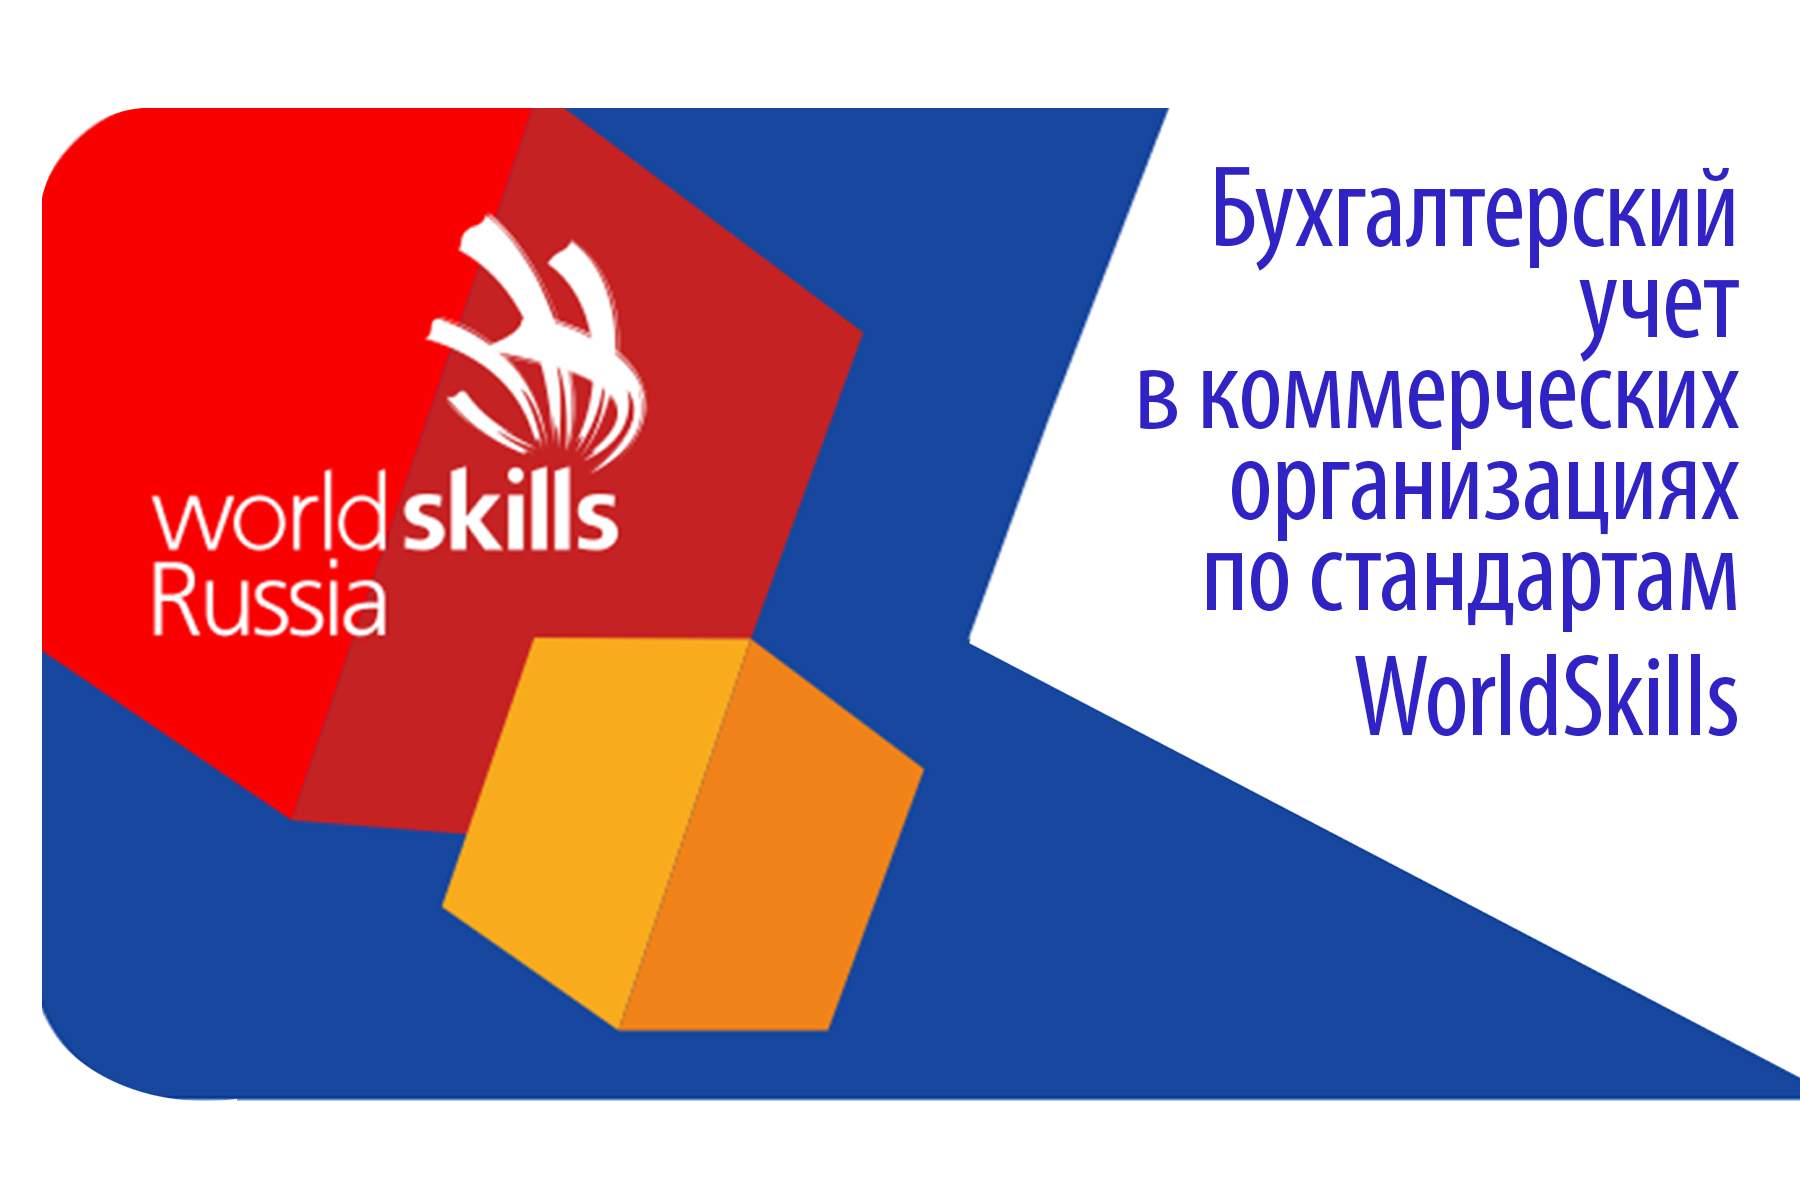 ВГУЭС предлагает программу «Бухгалтерский учет в коммерческих организациях» по стандартам WorldSkills